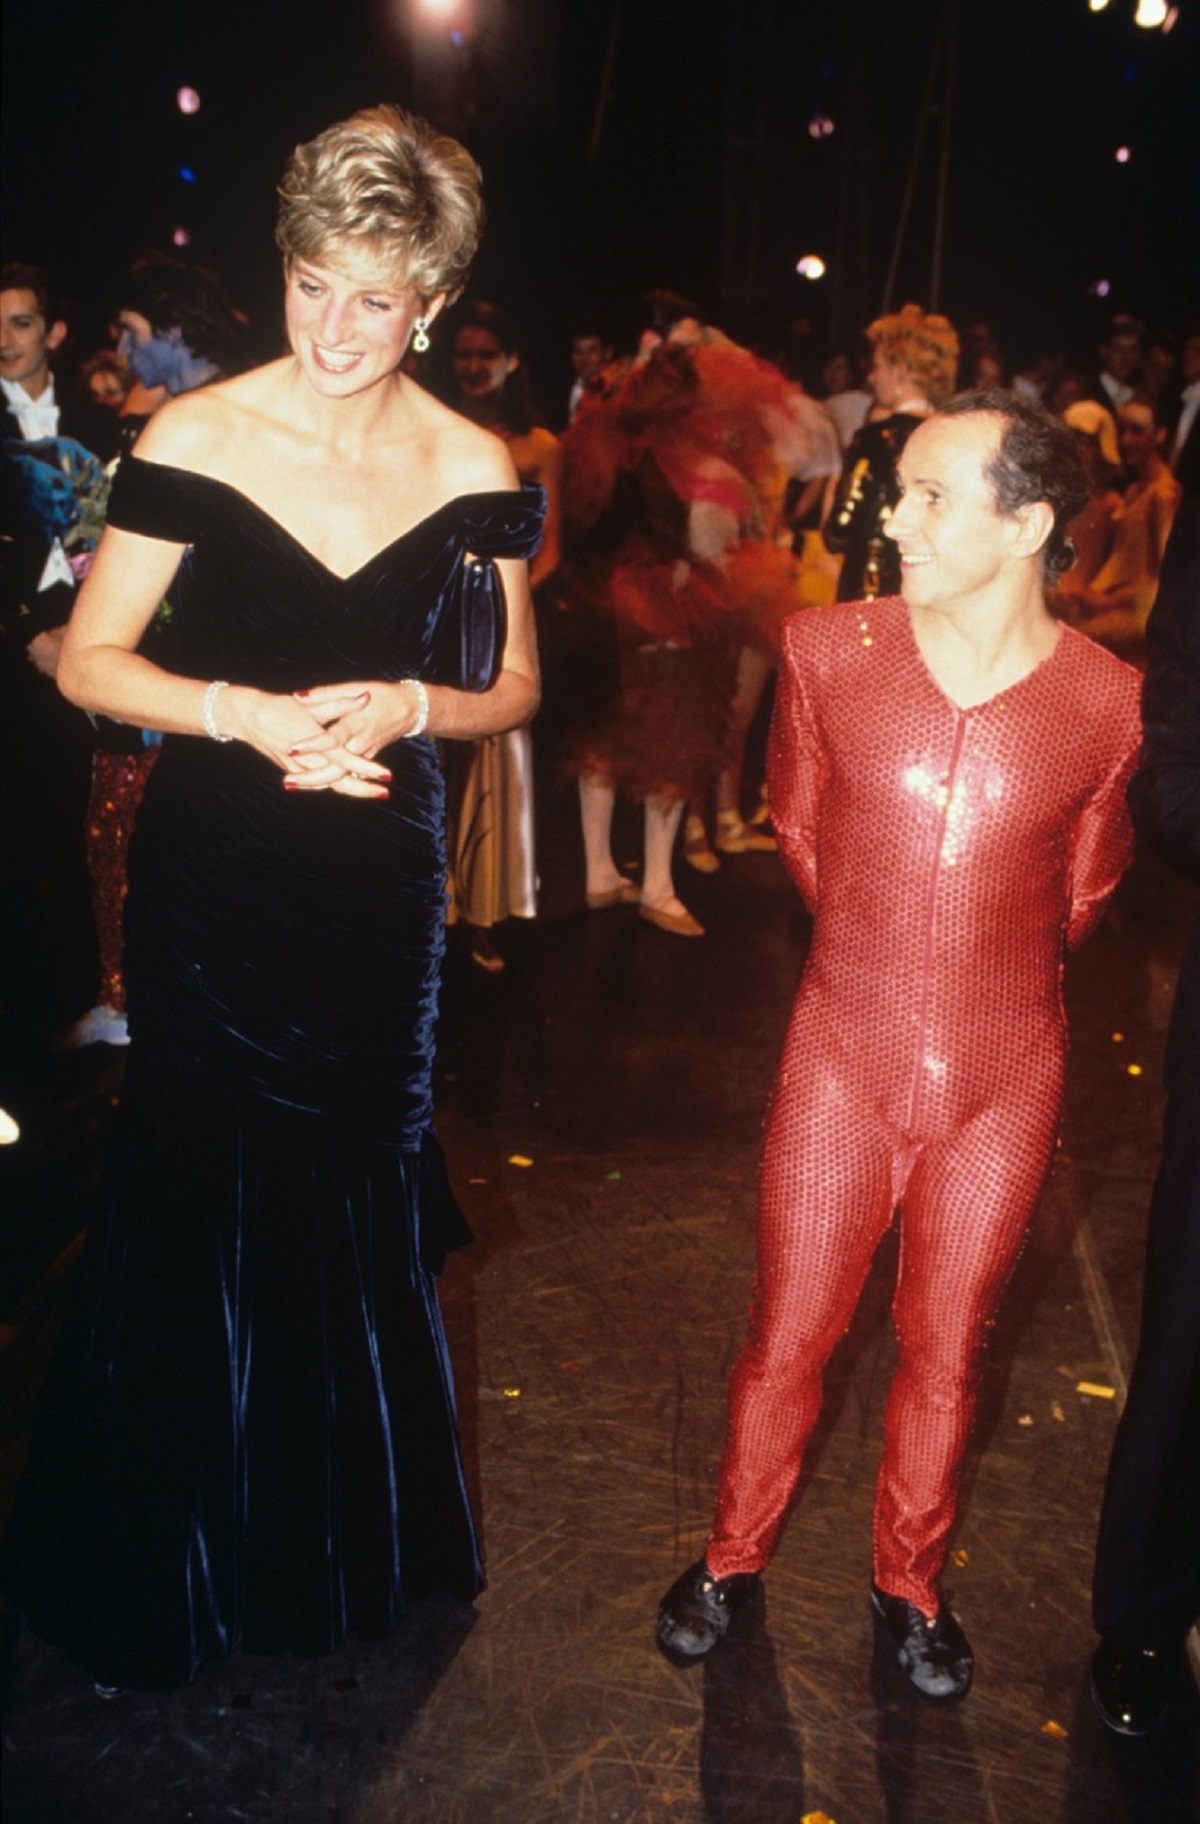 Porfesorul de dans al Prințesei Diana, Wayne Sleep, într-un costum cu paiete roșu alături de Lady Di îmbrăcată într-o rochie elegantă neagră în timp ce vorbesc la Carnavalul Păsărilor din cadrul Casei Regale de Operă în anul 1991